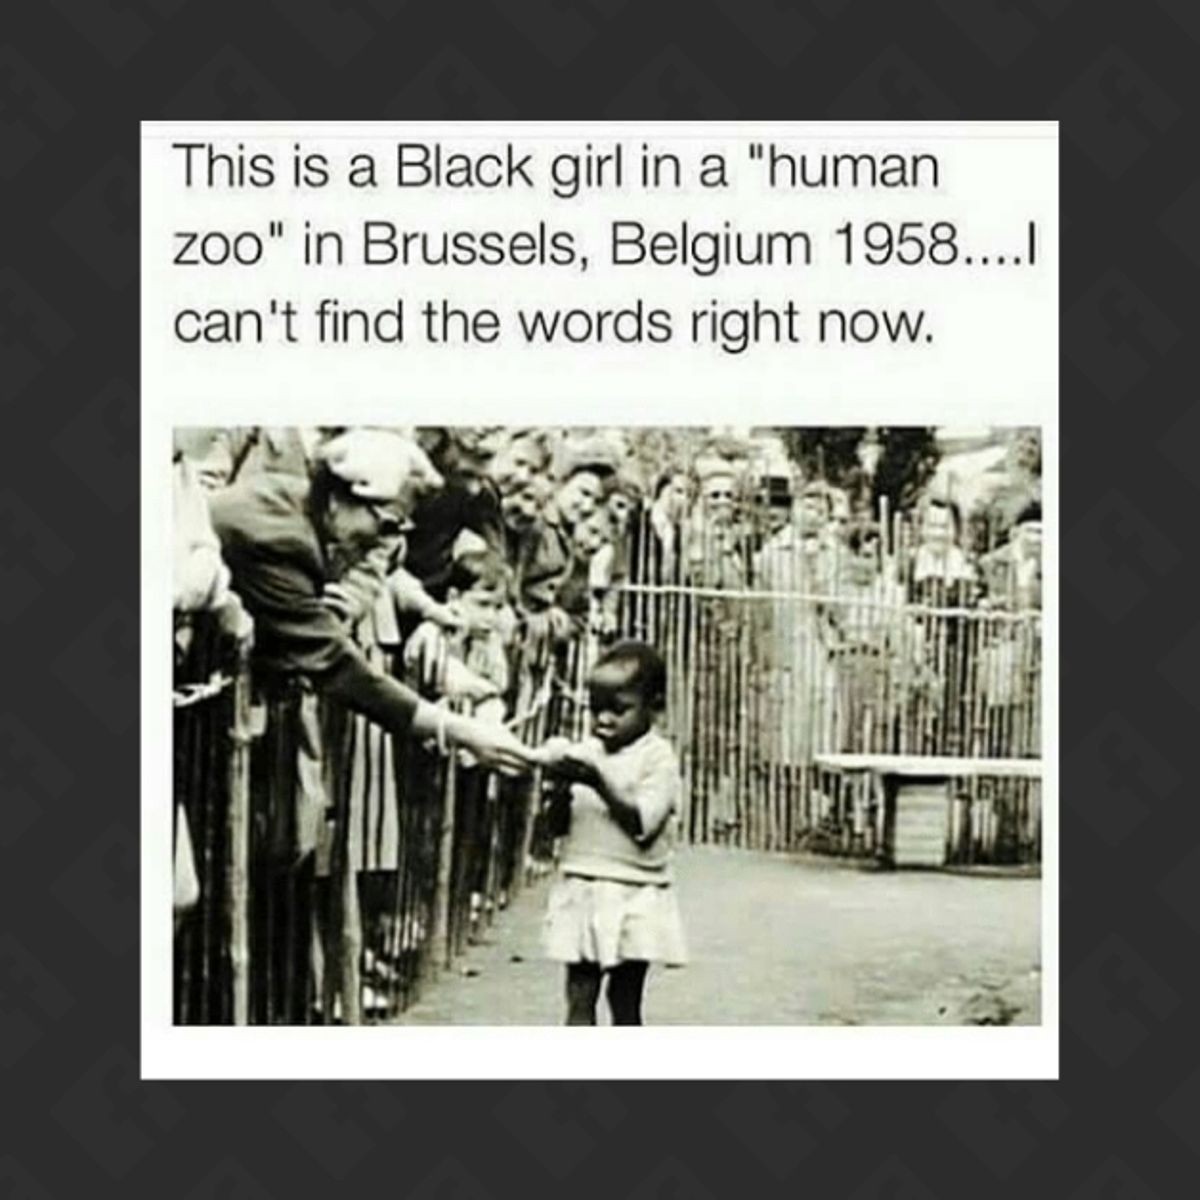 человеческий зоопарк в бельгии